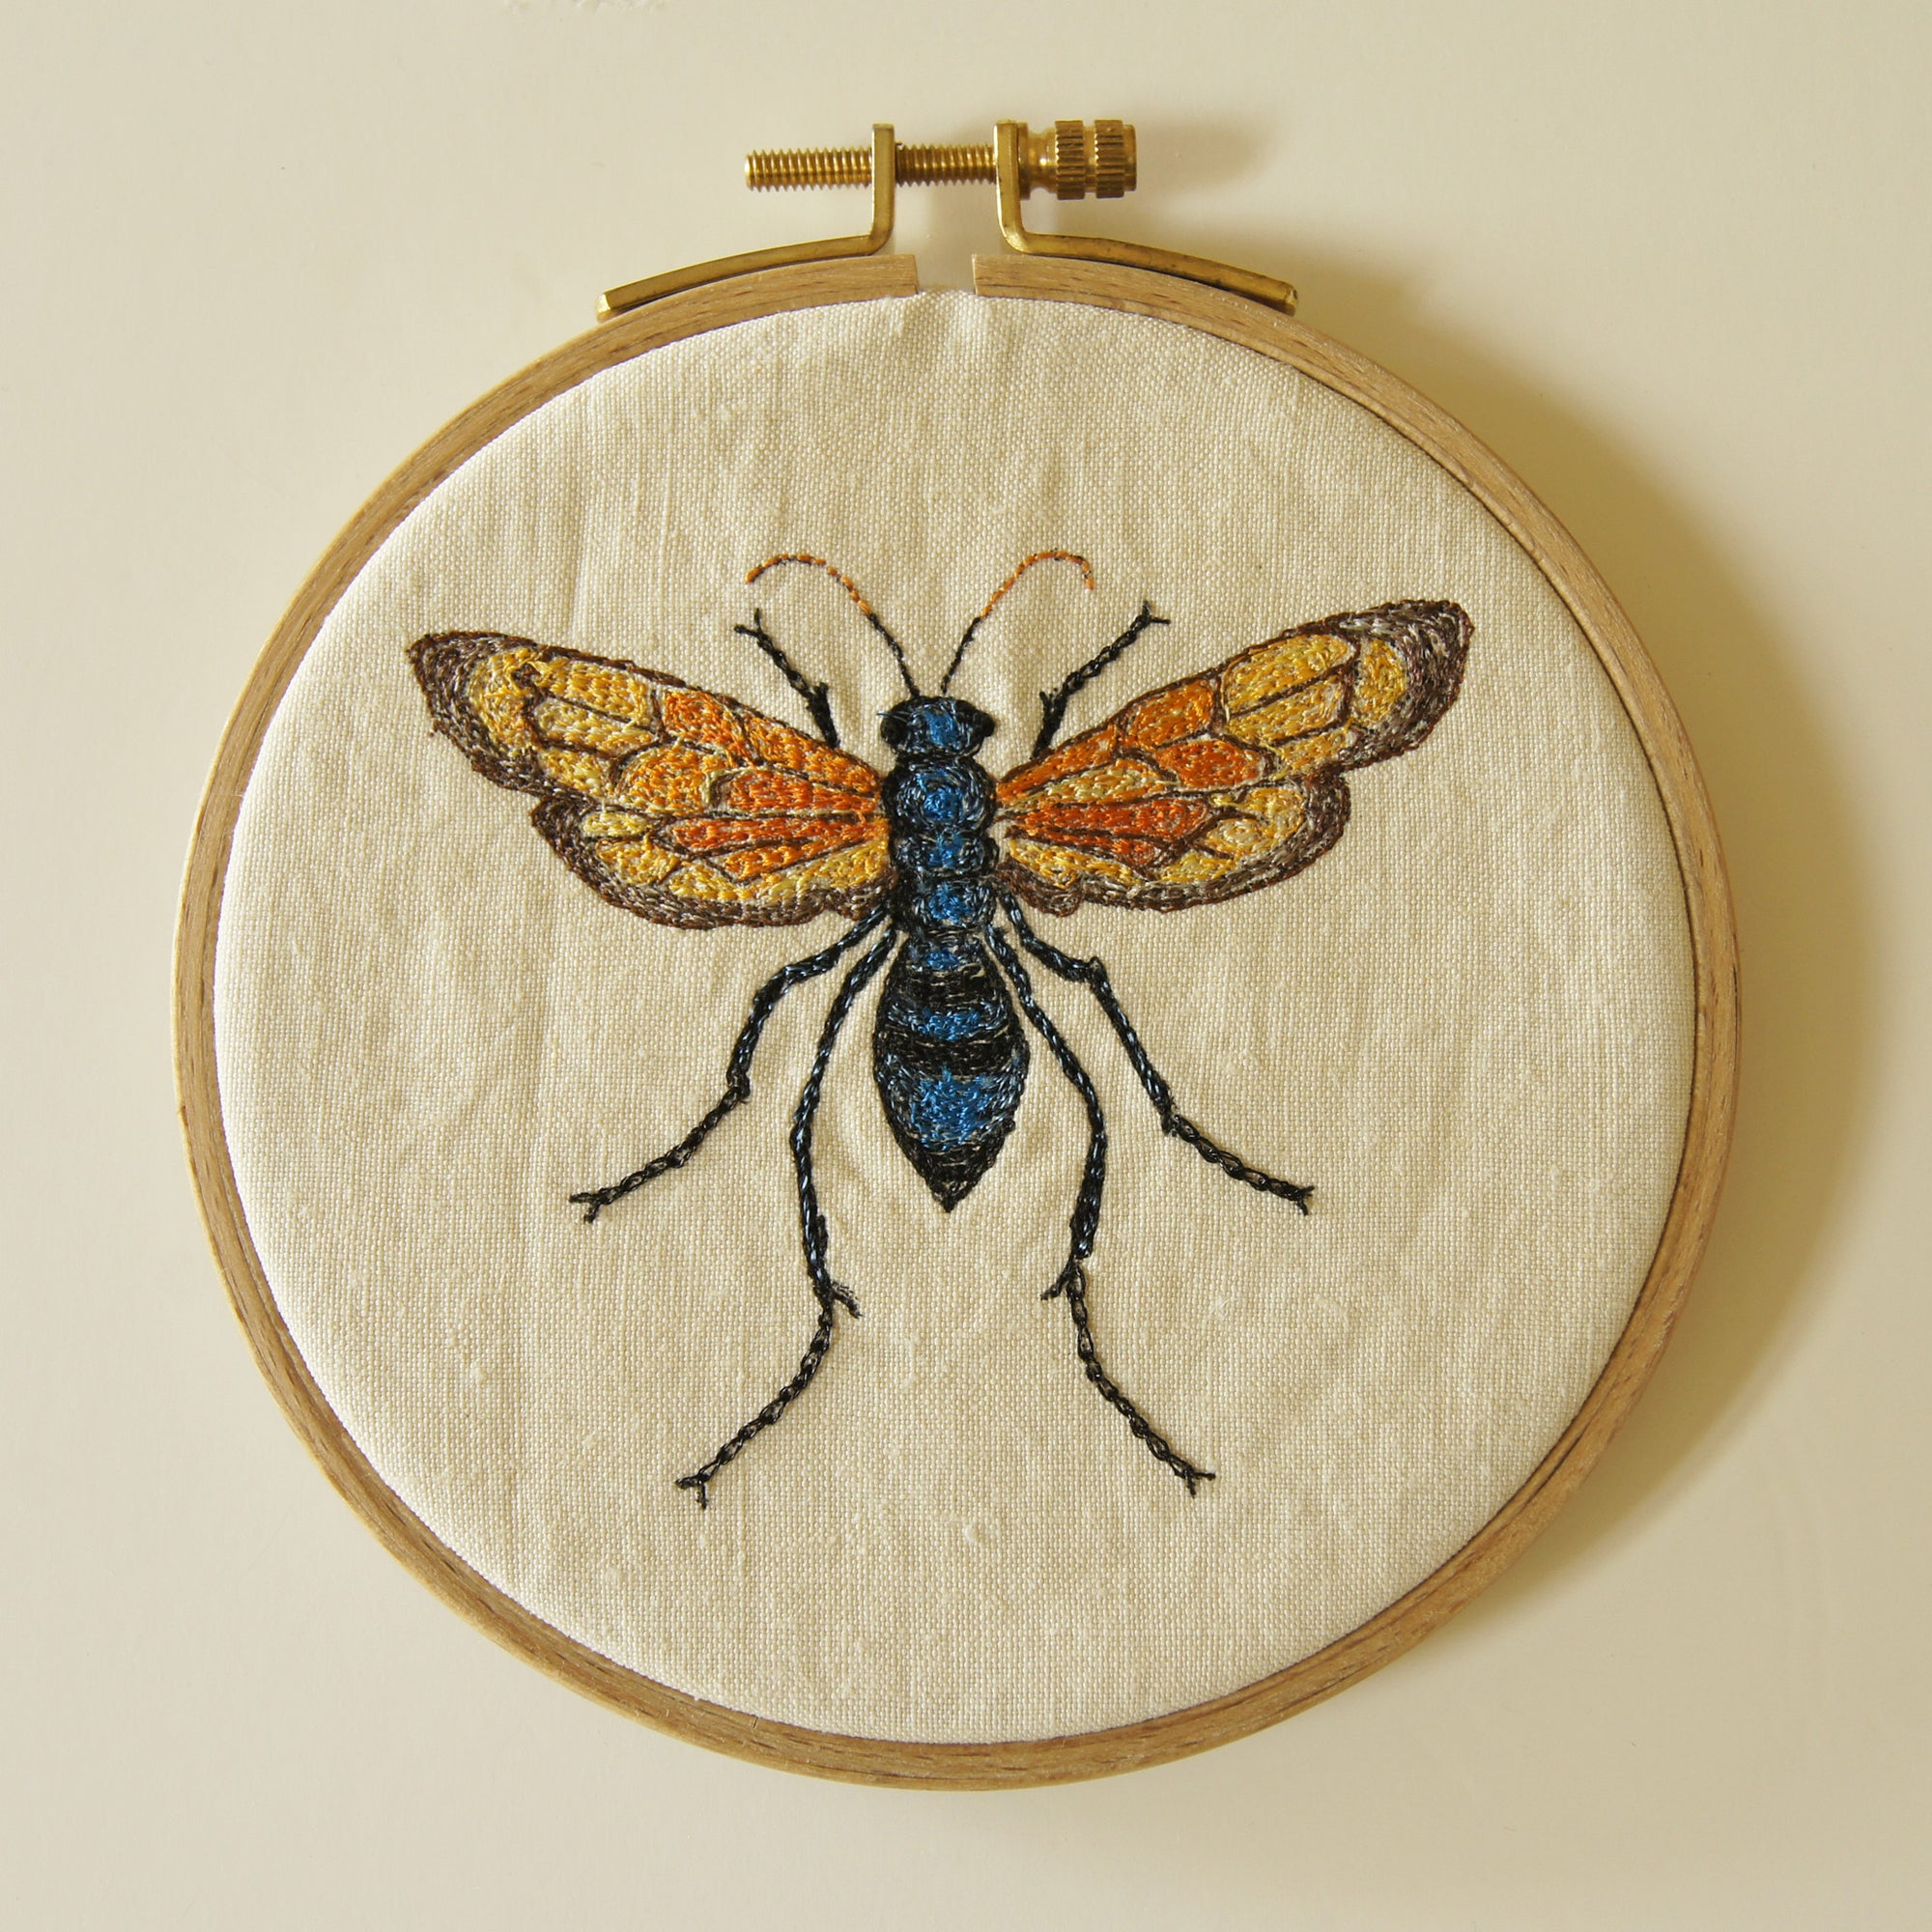 Hoop Embroidery Tarantula Hawk Wasp